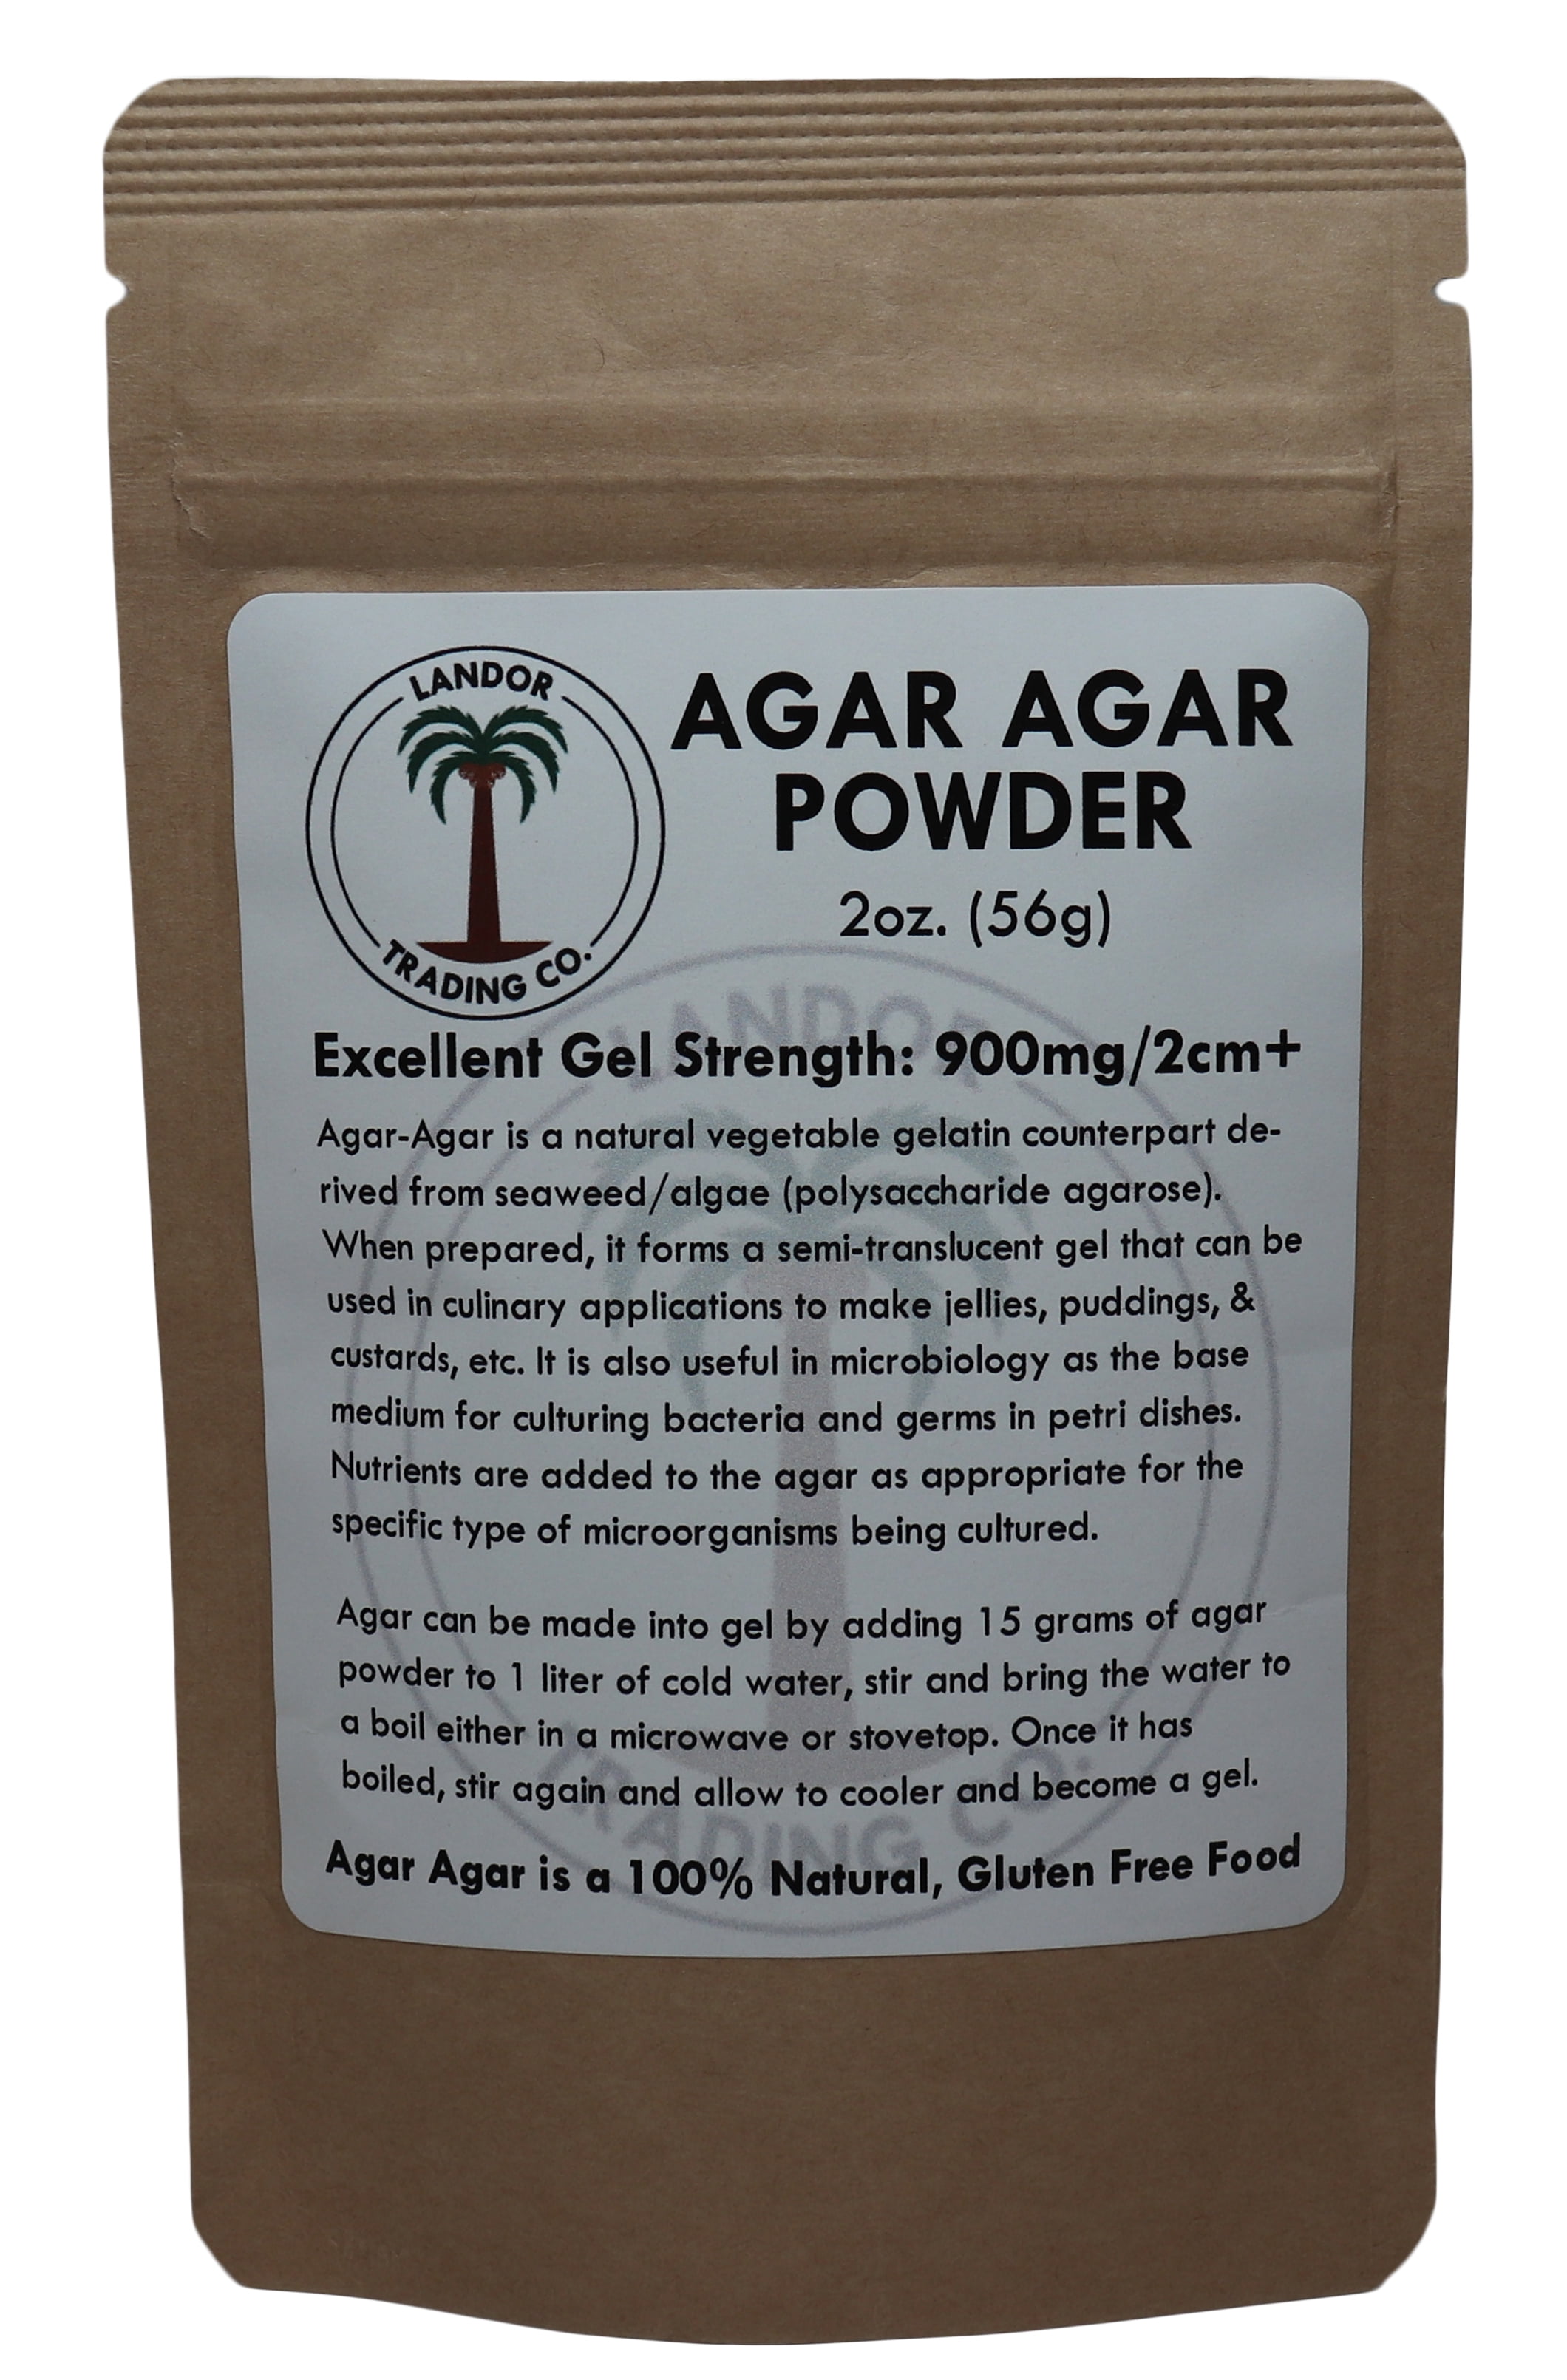 Agar Agar Powder 8 oz - Vegan (Vegetarian) Gelatin - Non GMO - Gluten Free and Nutrient Rich Unflavored